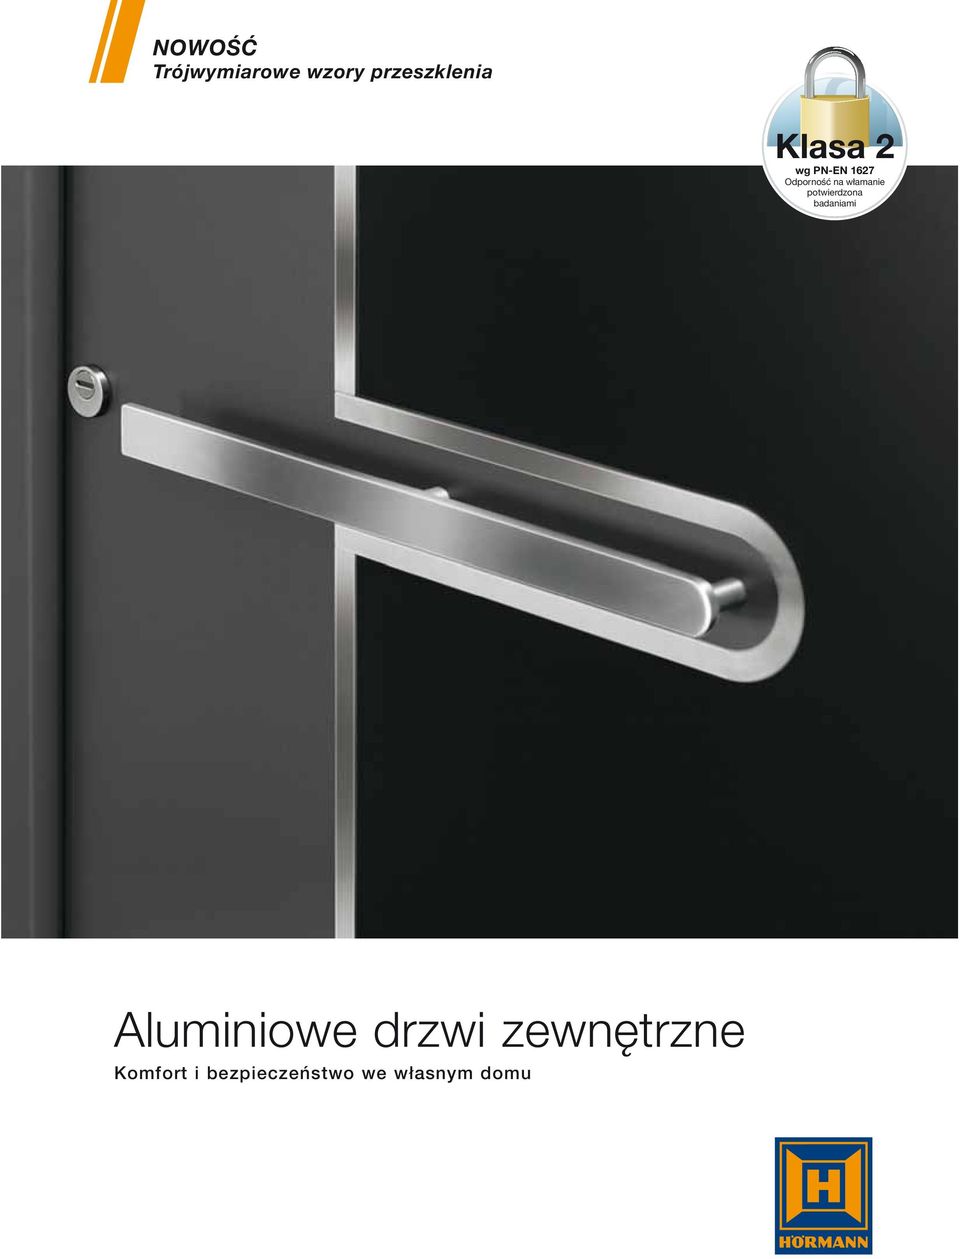 potwierdzona badaniami Aluminiowe drzwi